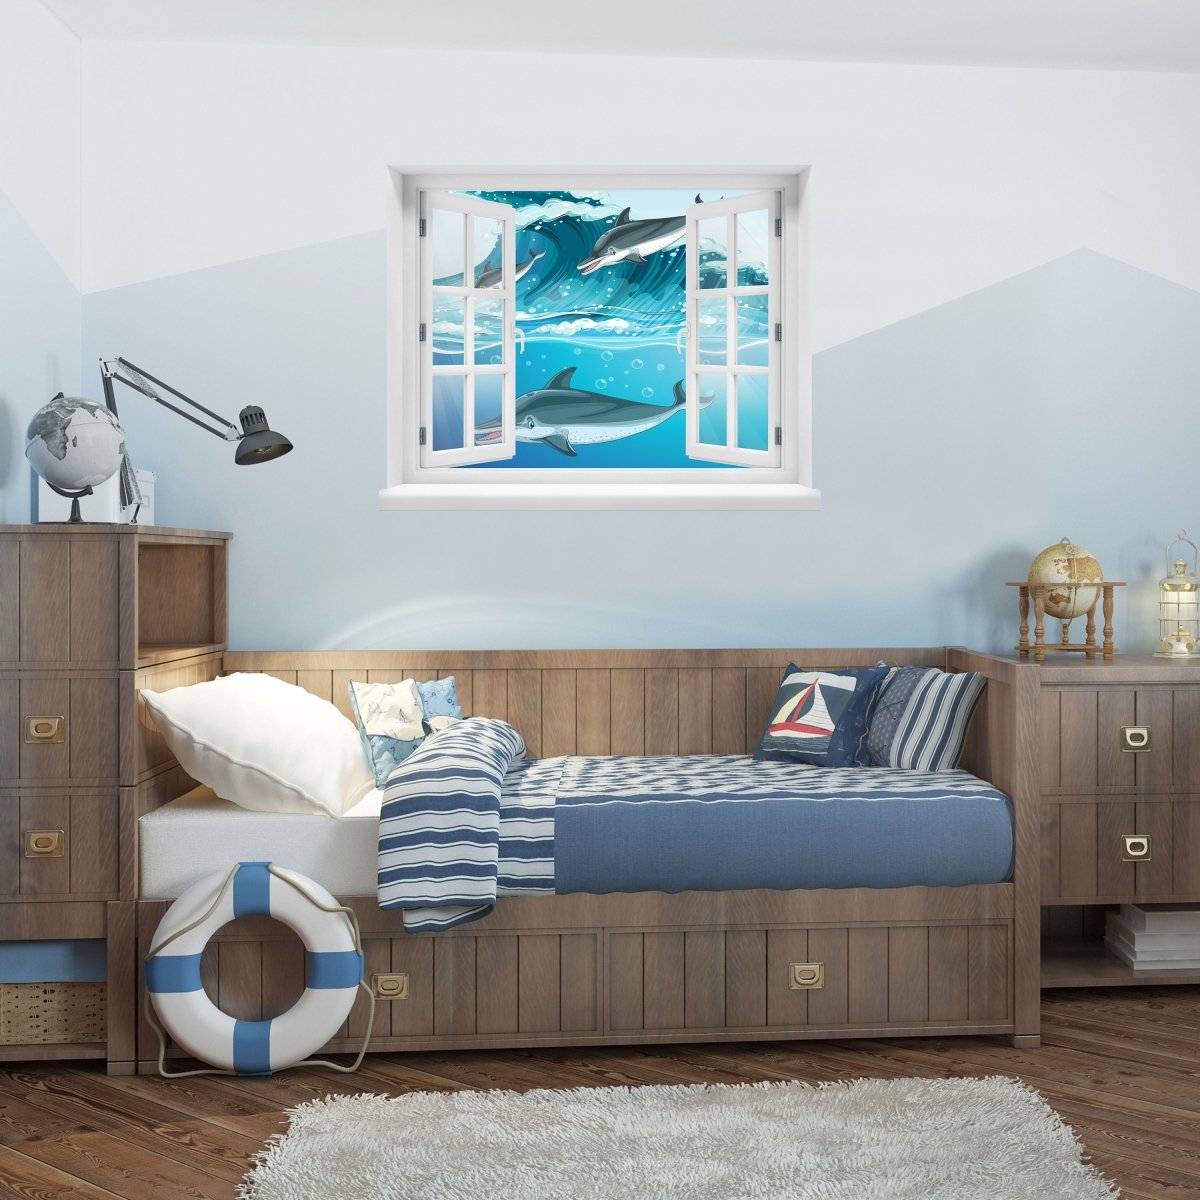 Sticker mural 3D dauphins dans la mer, vague, eau, enfants - Wall Decal M1225